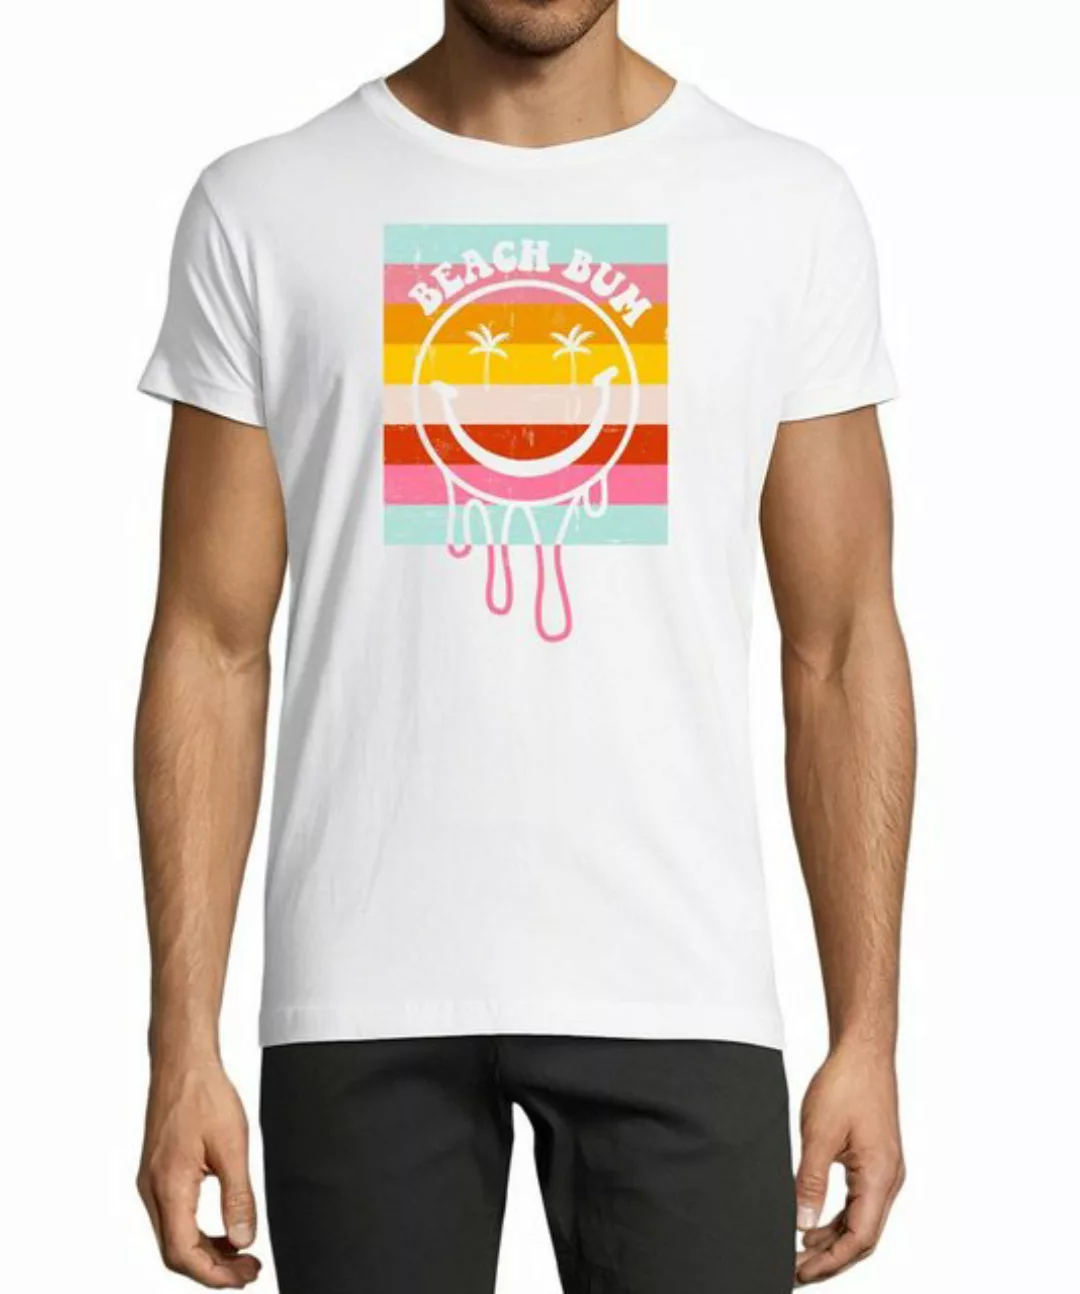 MyDesign24 T-Shirt Herren Smiley Print Shirt - Bunter Beach Bum Smiley Baum günstig online kaufen